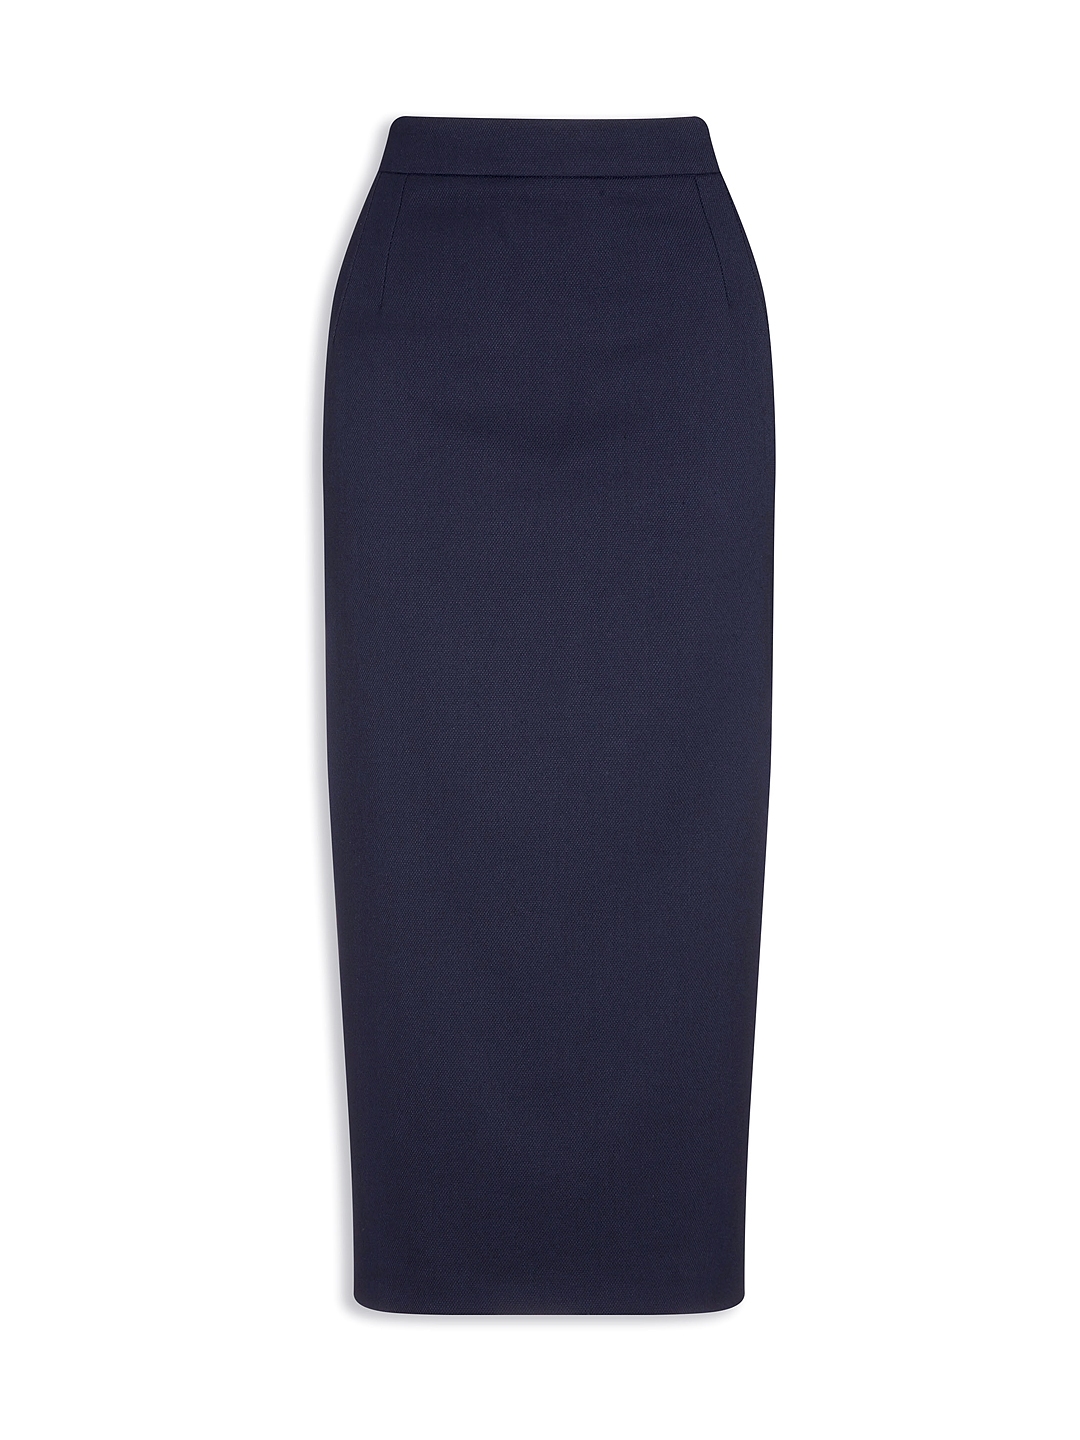 Buy Next Women Blue Pencil Skirt - Skirts for Women 1839080 | Myntra